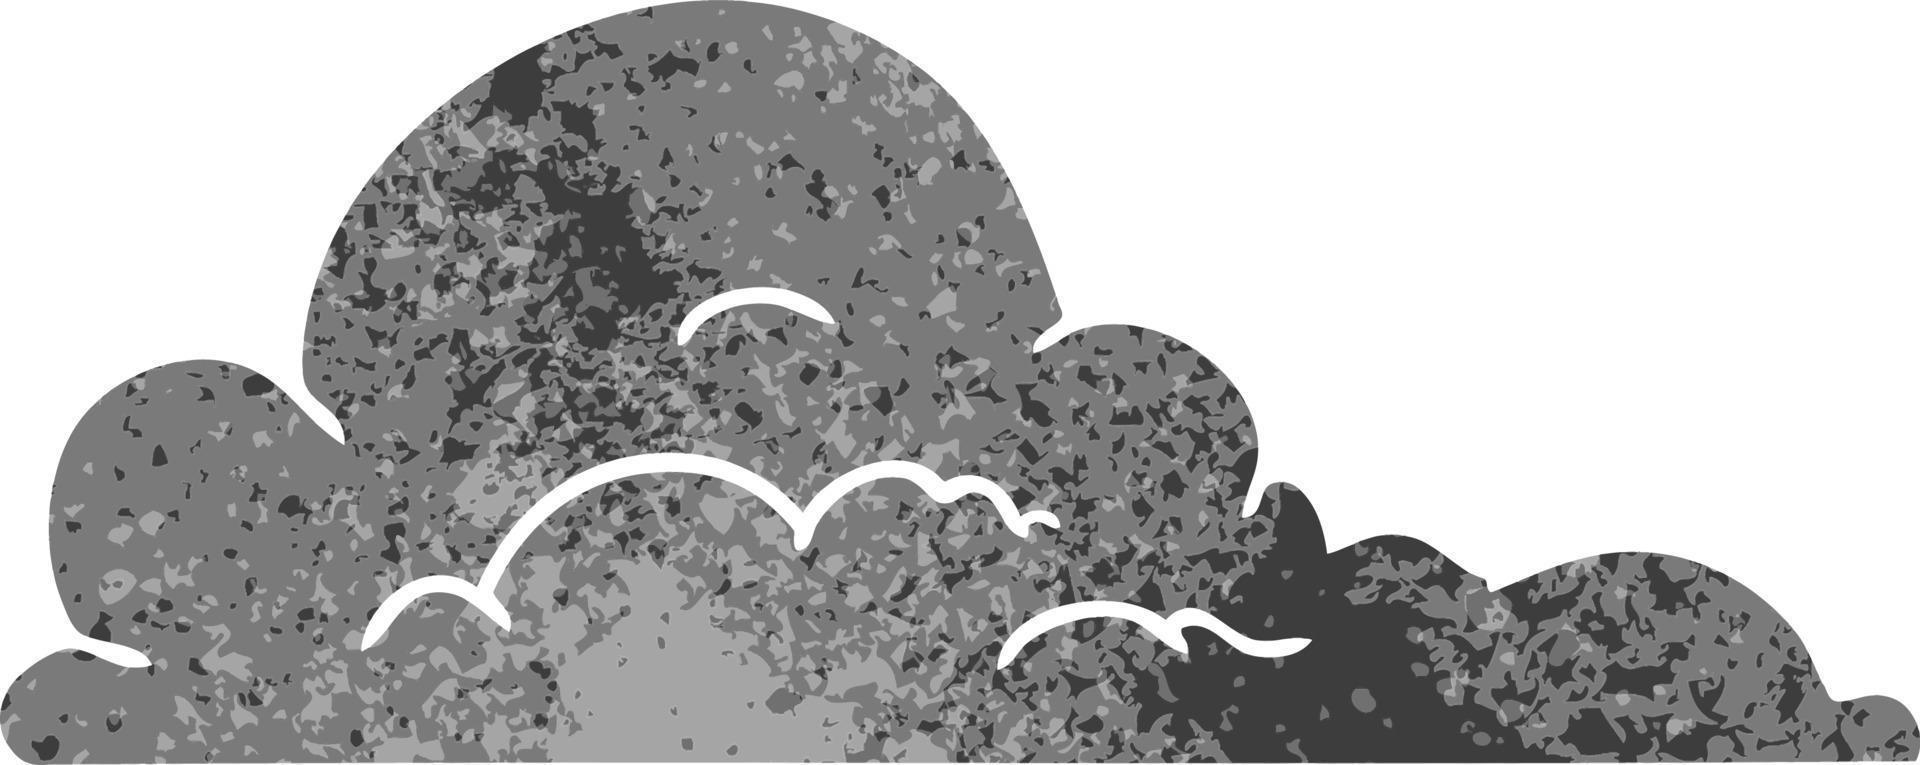 Retro-Cartoon-Doodle von weißen großen Wolken vektor